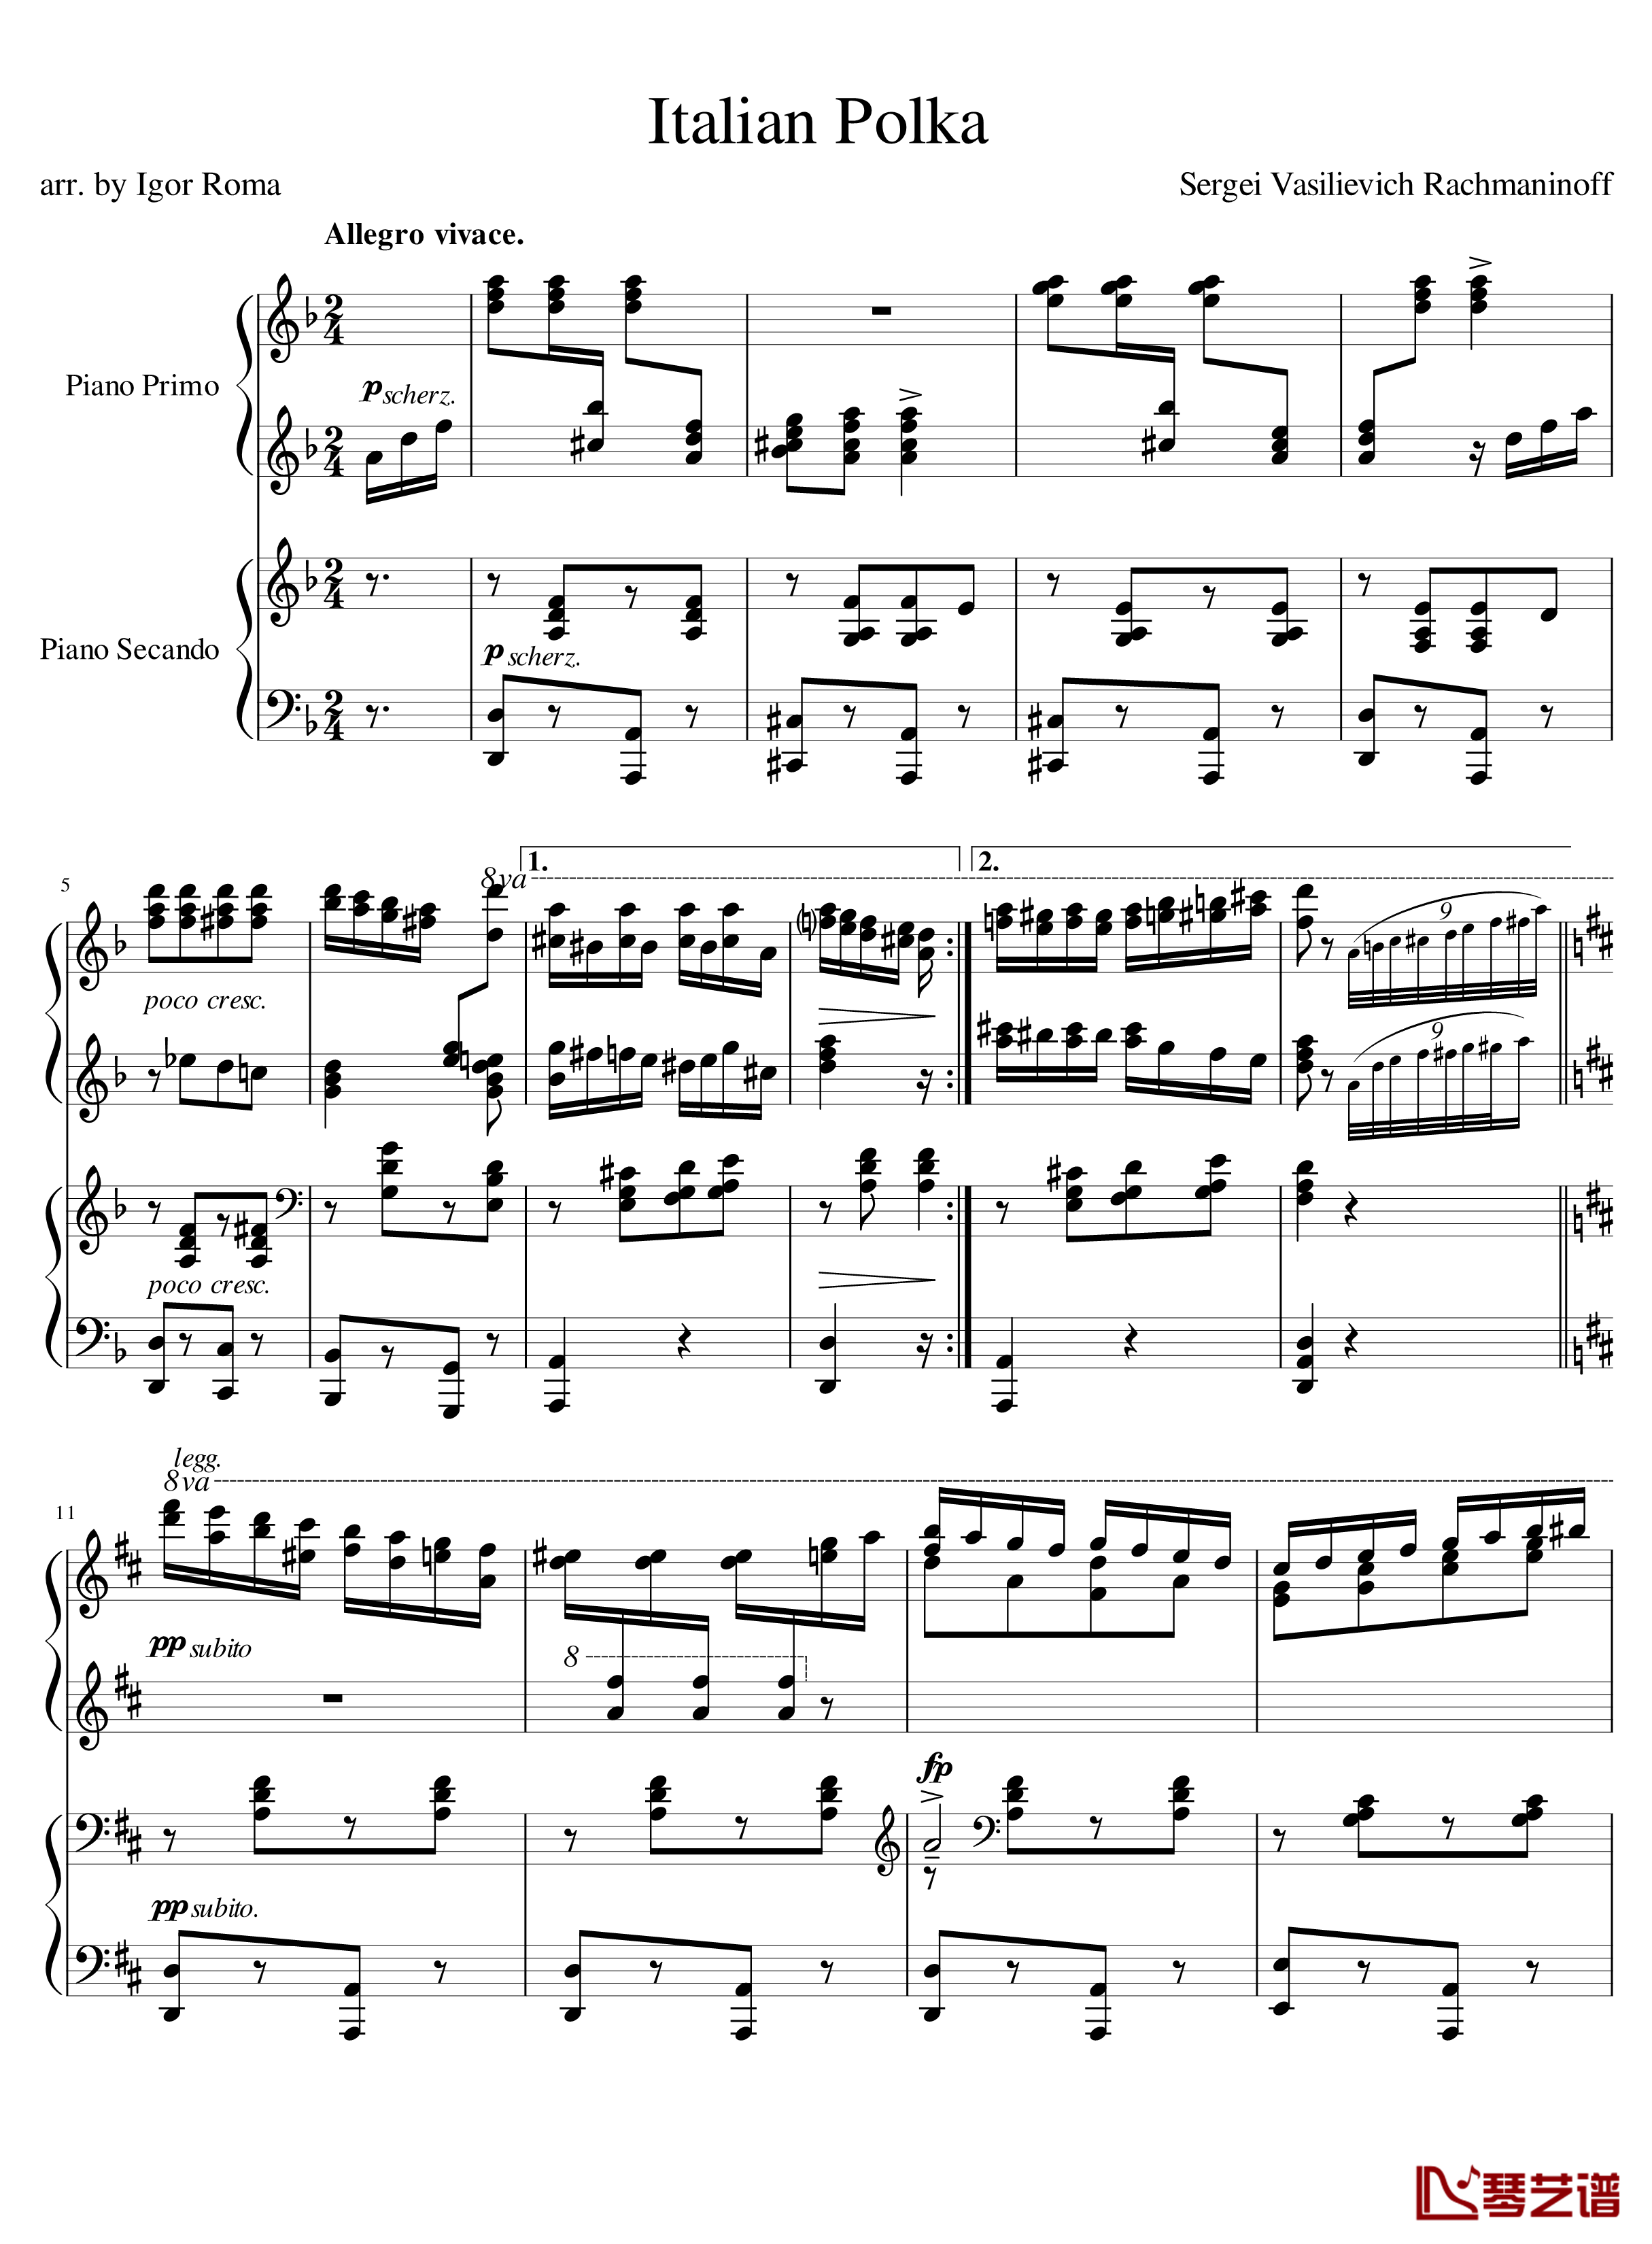 Italian Polka钢琴谱-意大利波尔卡-拉赫马尼若夫1